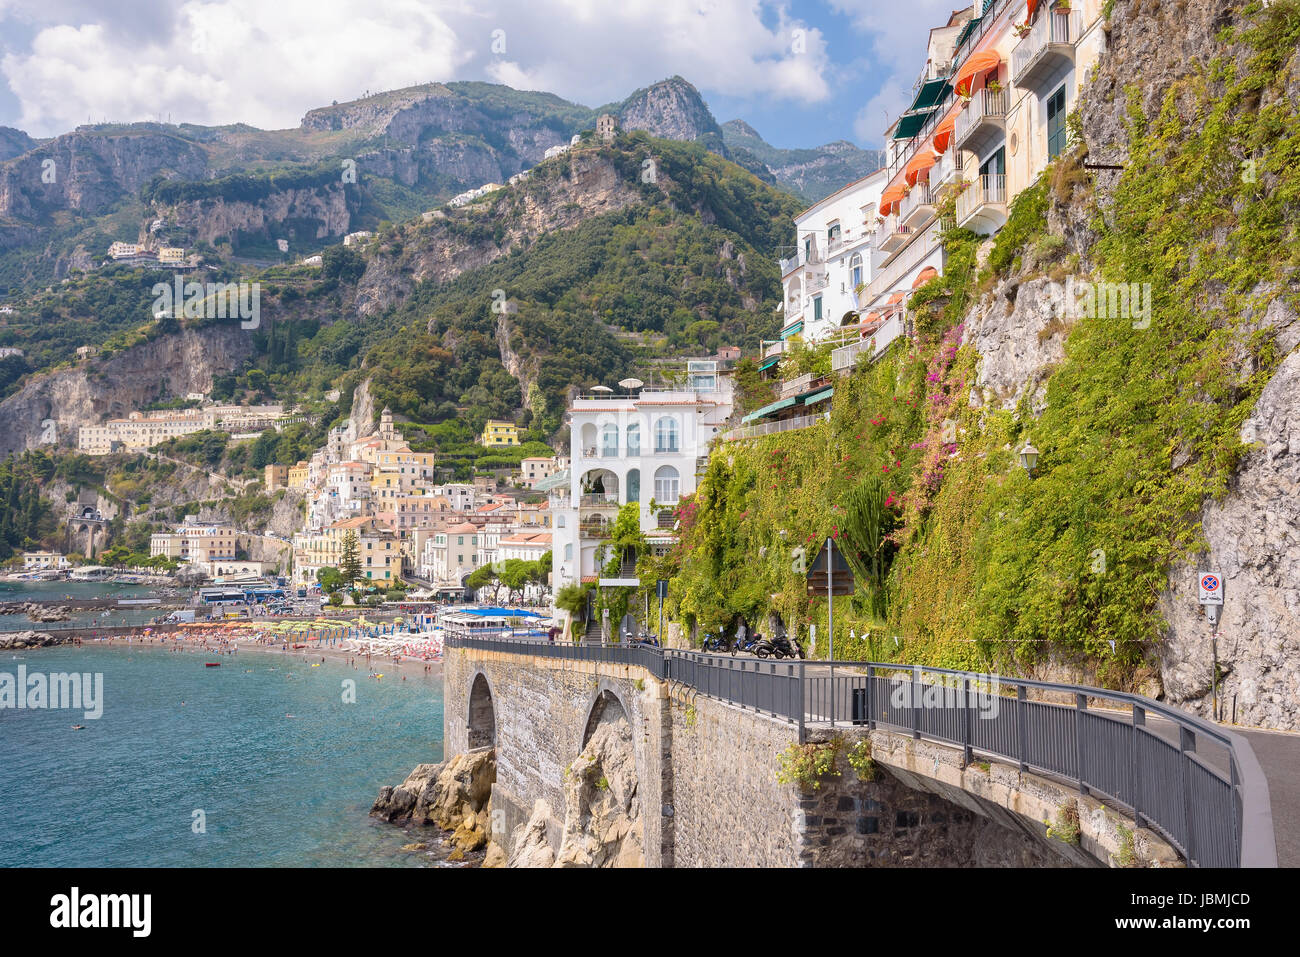 Route sur la falaise à Amalfi, ville de Campanie, Italie Banque D'Images